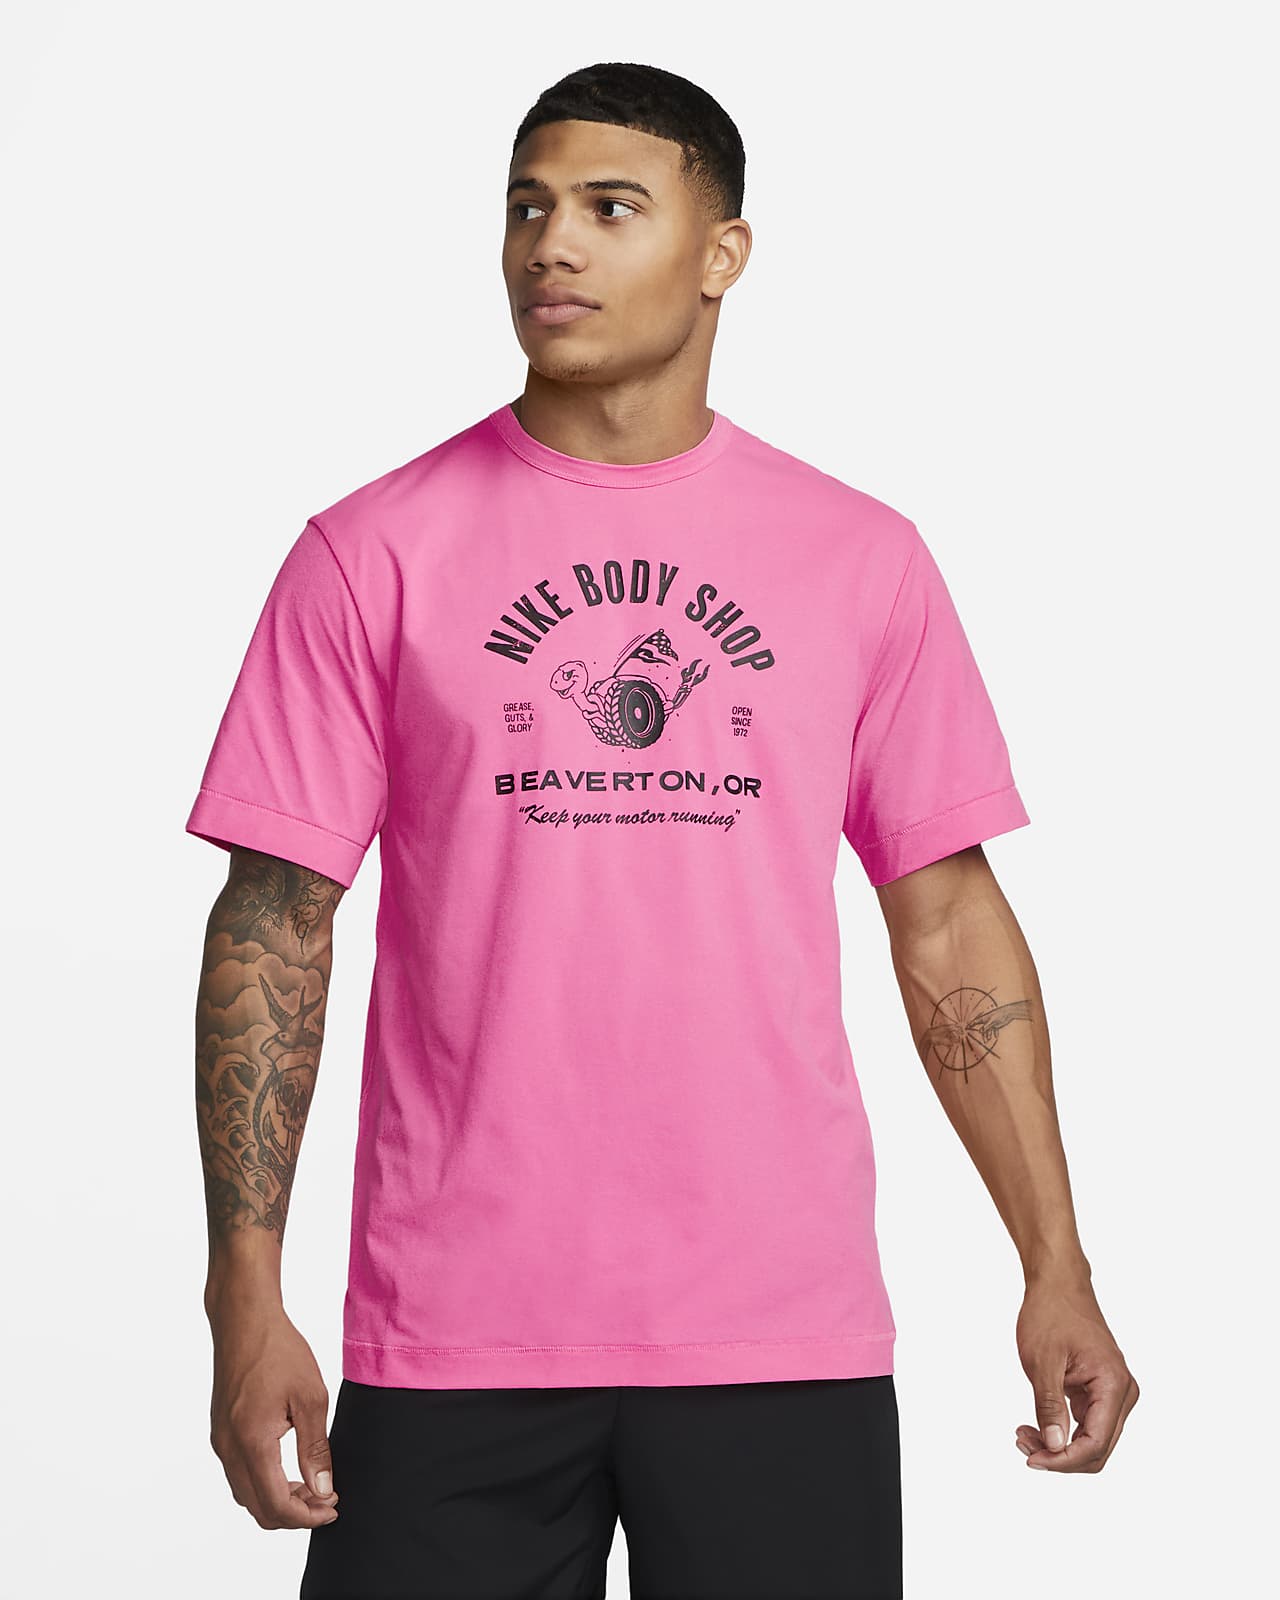 Men's T-Shirts & Tops. Nike FI